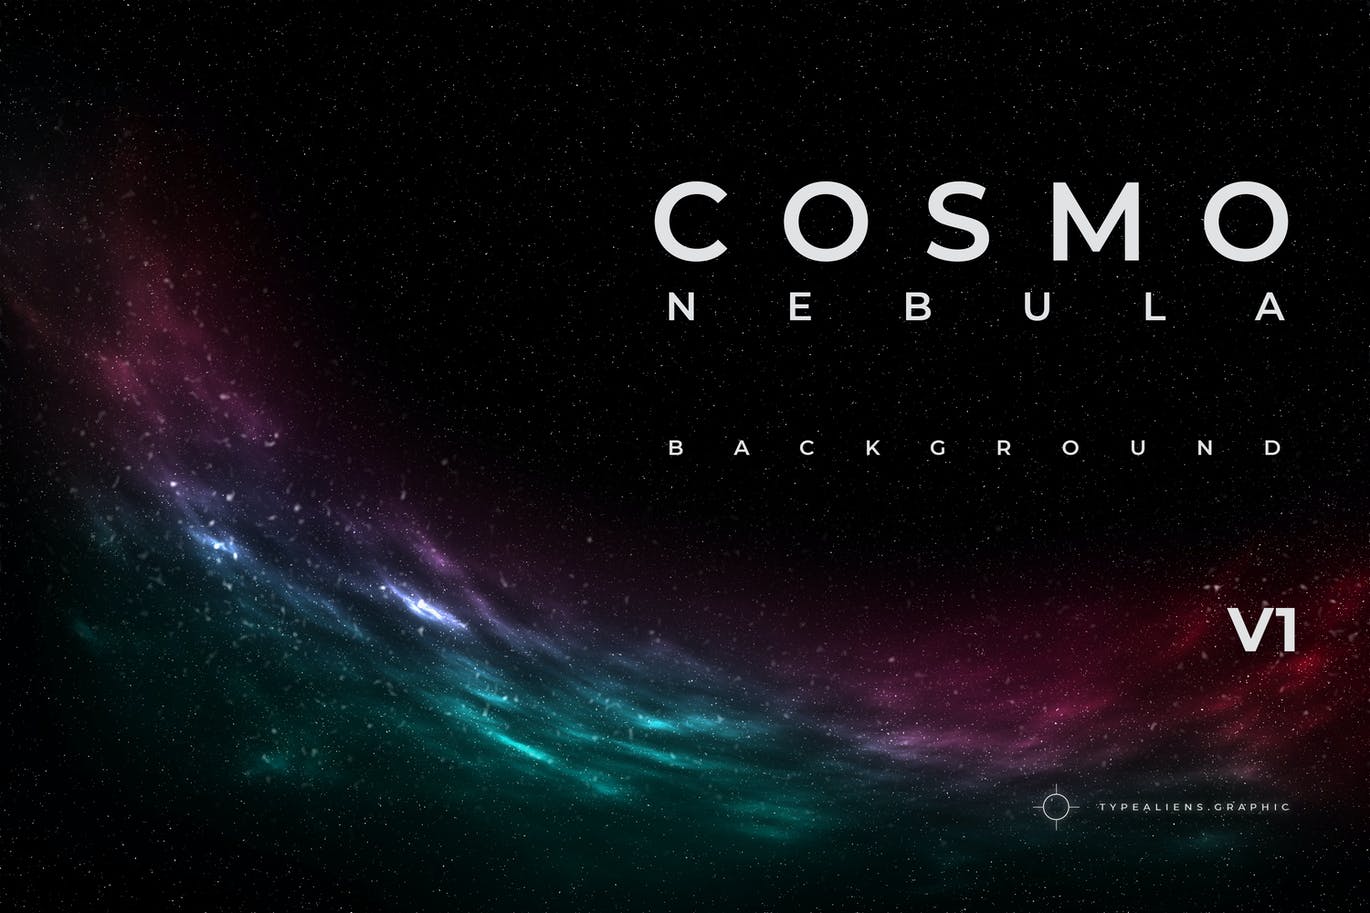 宇宙太空星云背景v1 Cosmo Nebula Background V1 图片素材 第1张